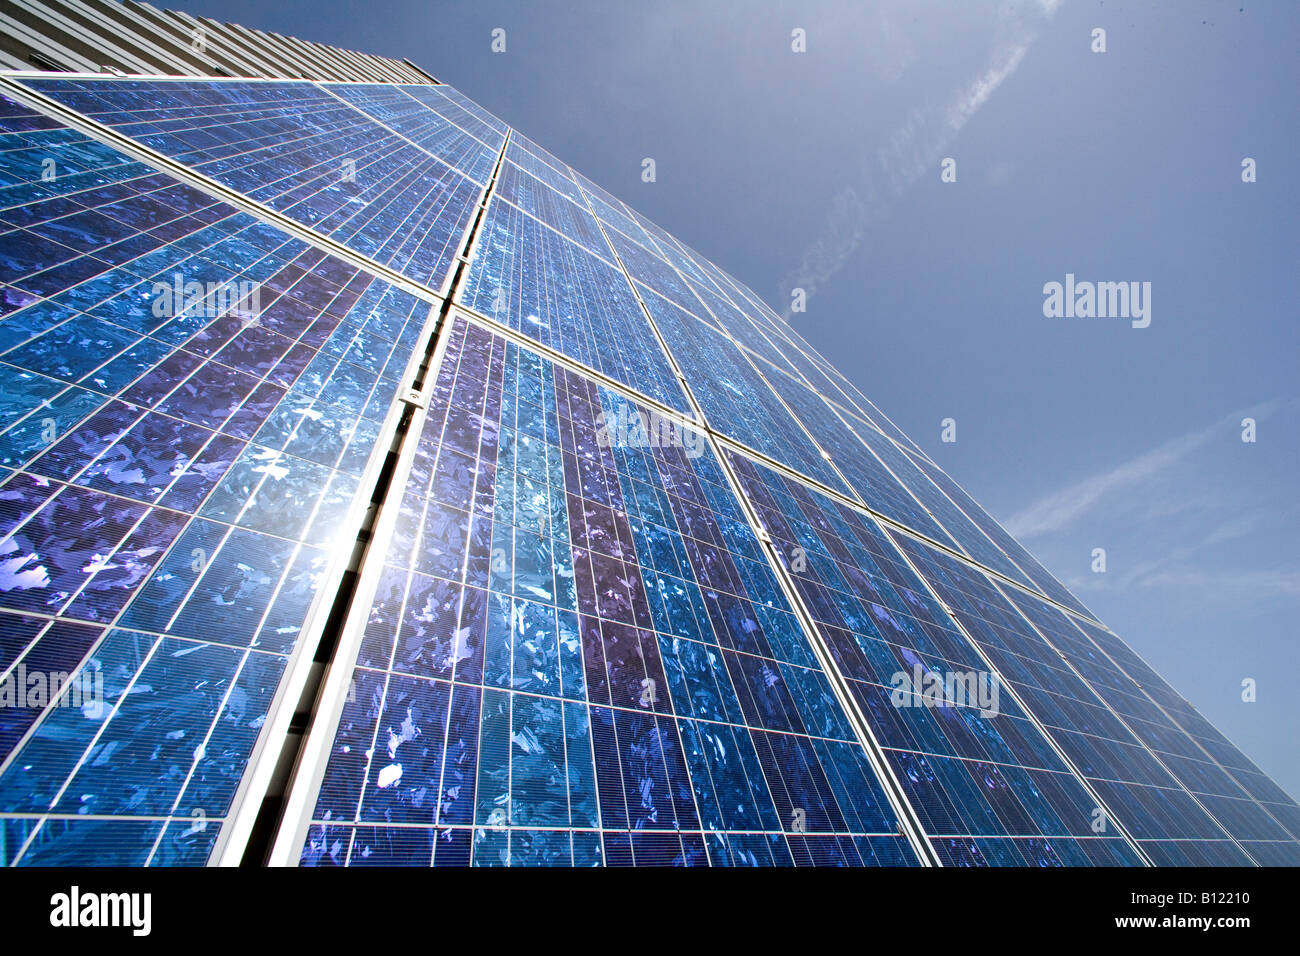 Produktionsstätte für Solarmodule Aleo solar AG in Prenzlau Solar-Panels an der Außenseite der Anlage Stockfoto